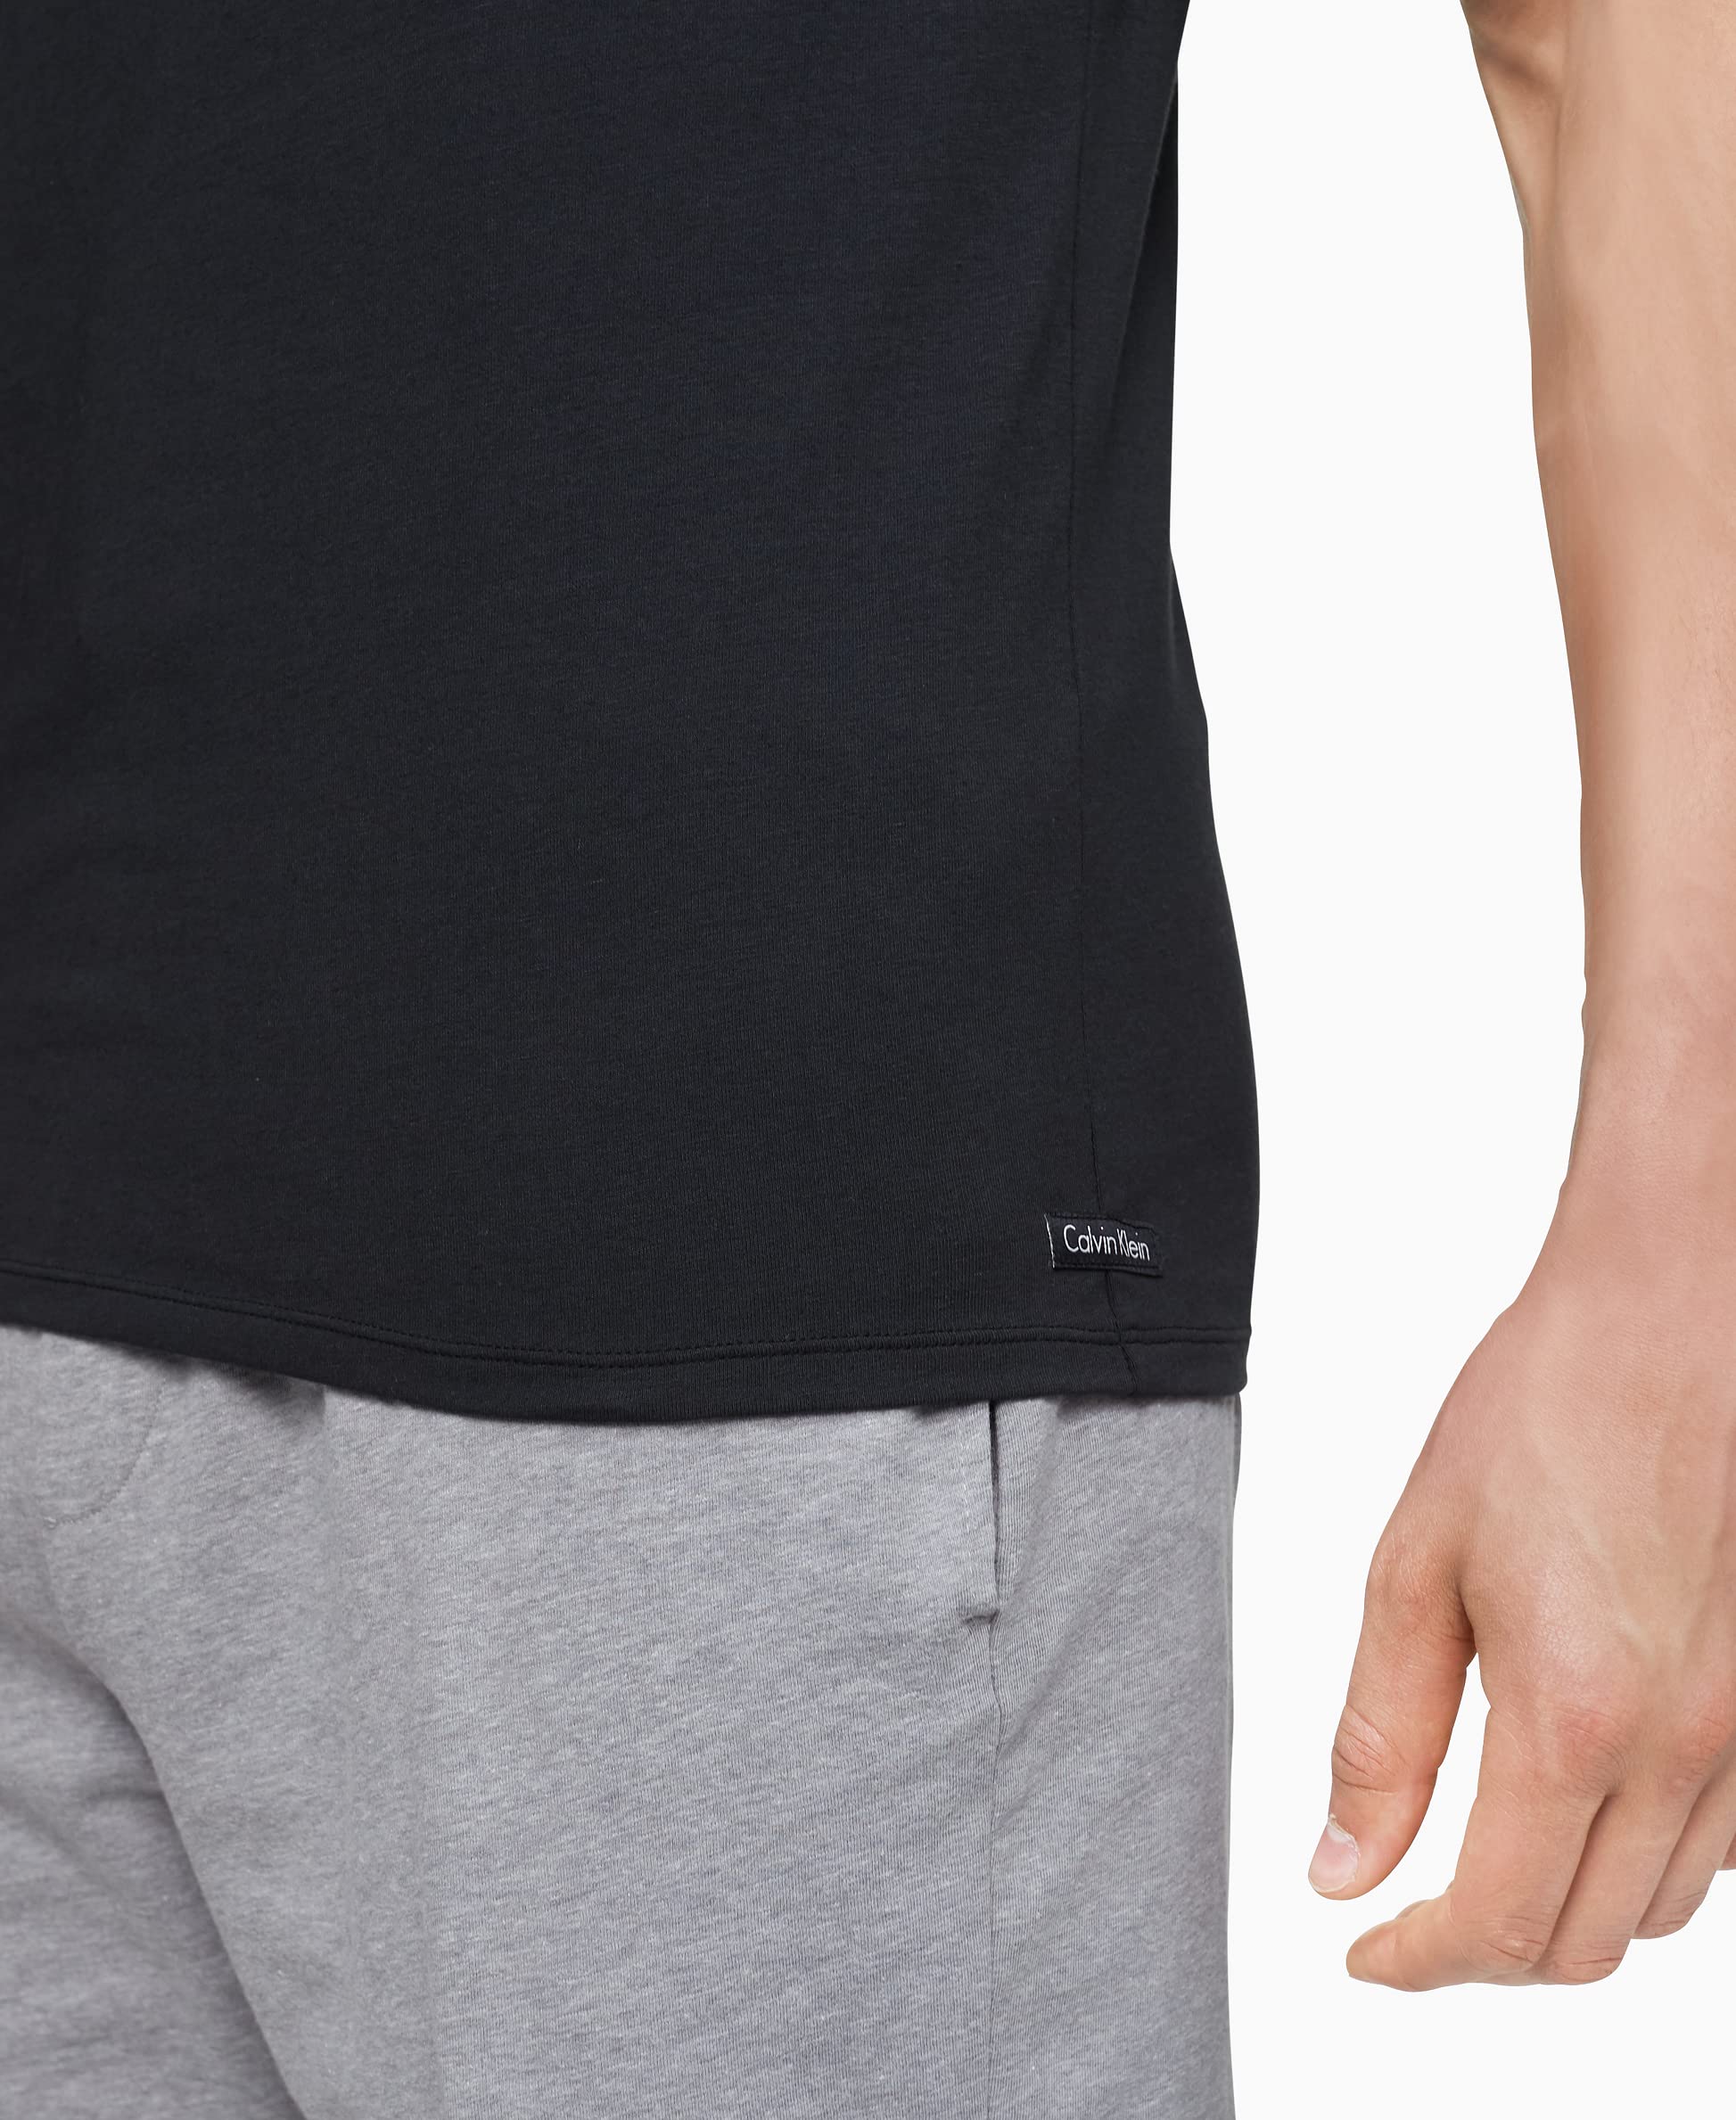 Calvin Klein Men's Cotton Stretch Undershirt Packs